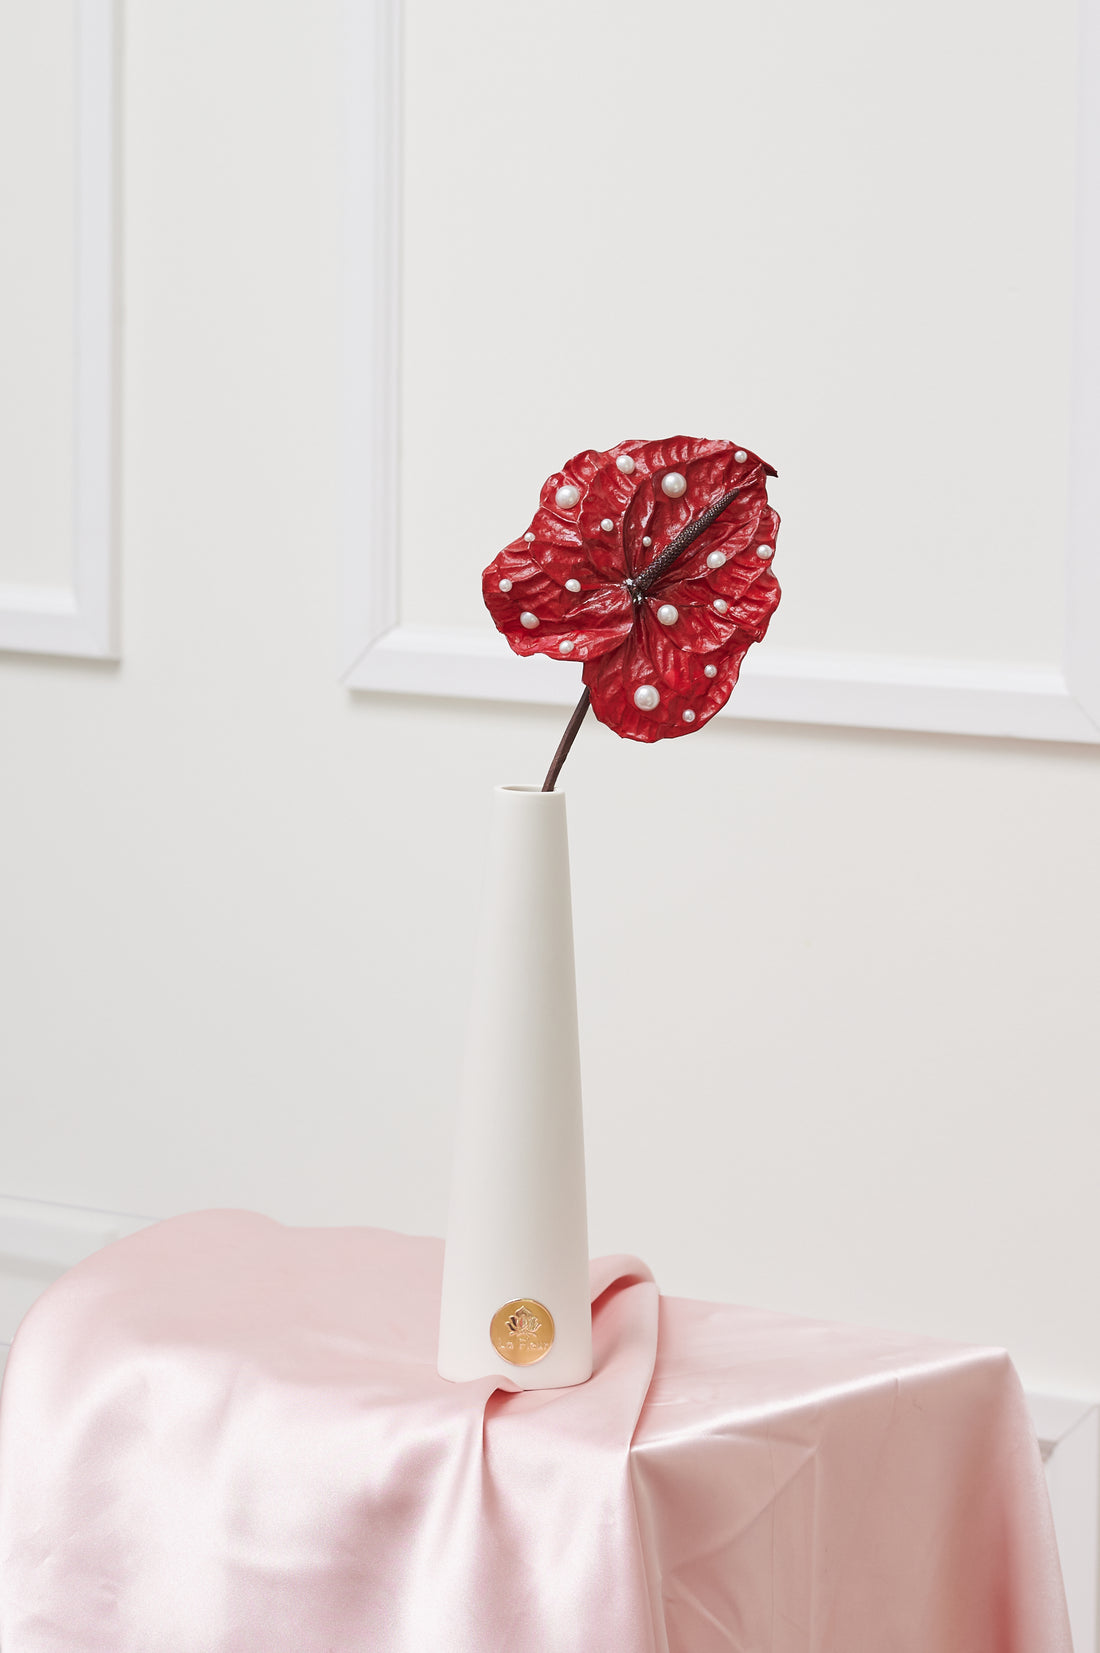 Anthurium Single Stem - Pearl by La Fleur Lifetime Flowers